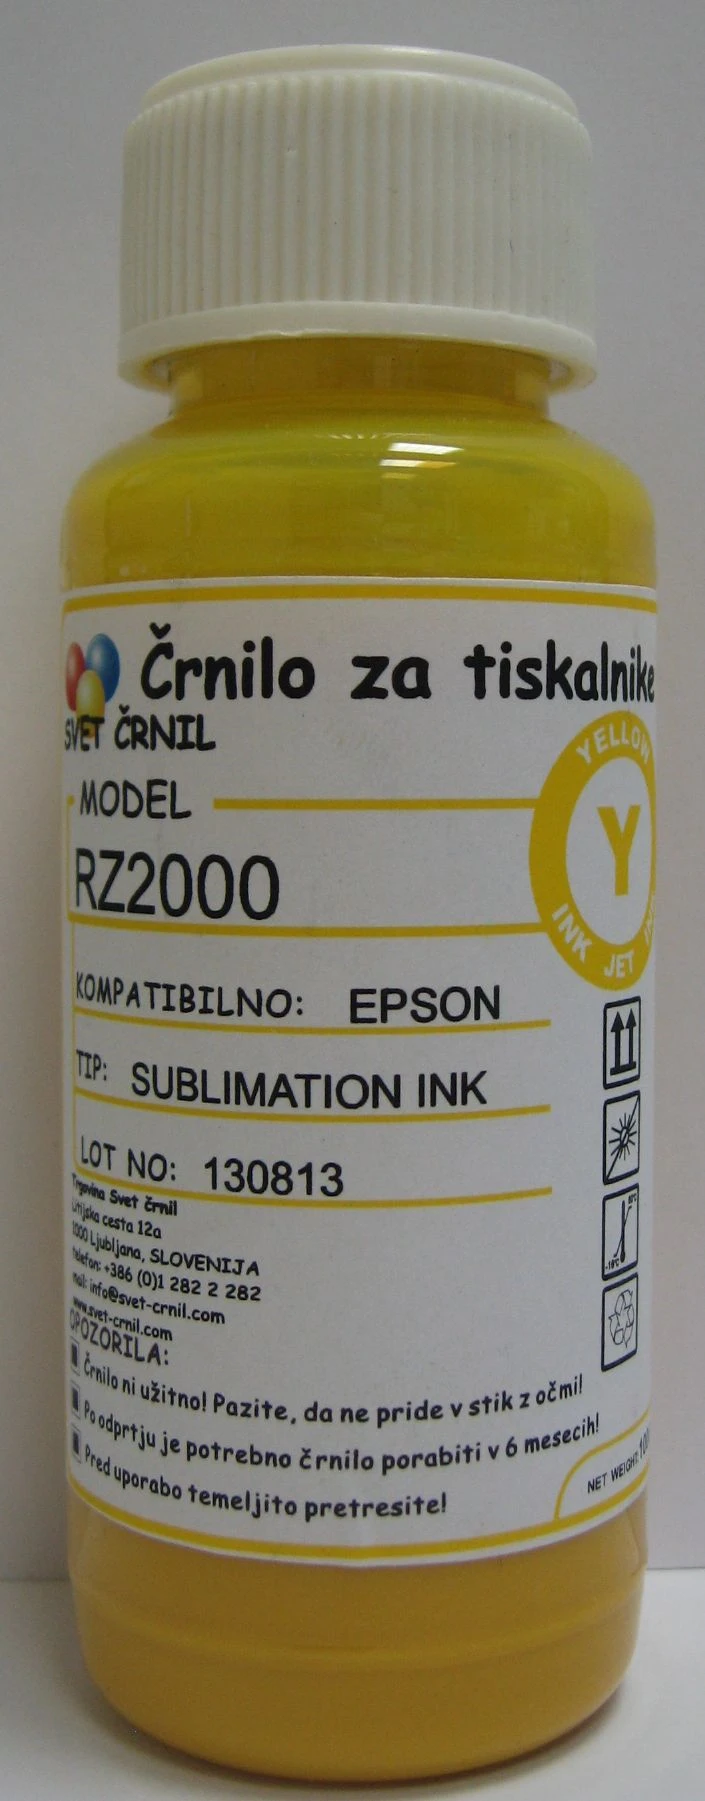 Hibridno sublimacijsko črnilo za Epson RZ2000 Yellow 100ml, rz2000,sublimacijsko črnilo,hibridna sublimacija,sublimacija